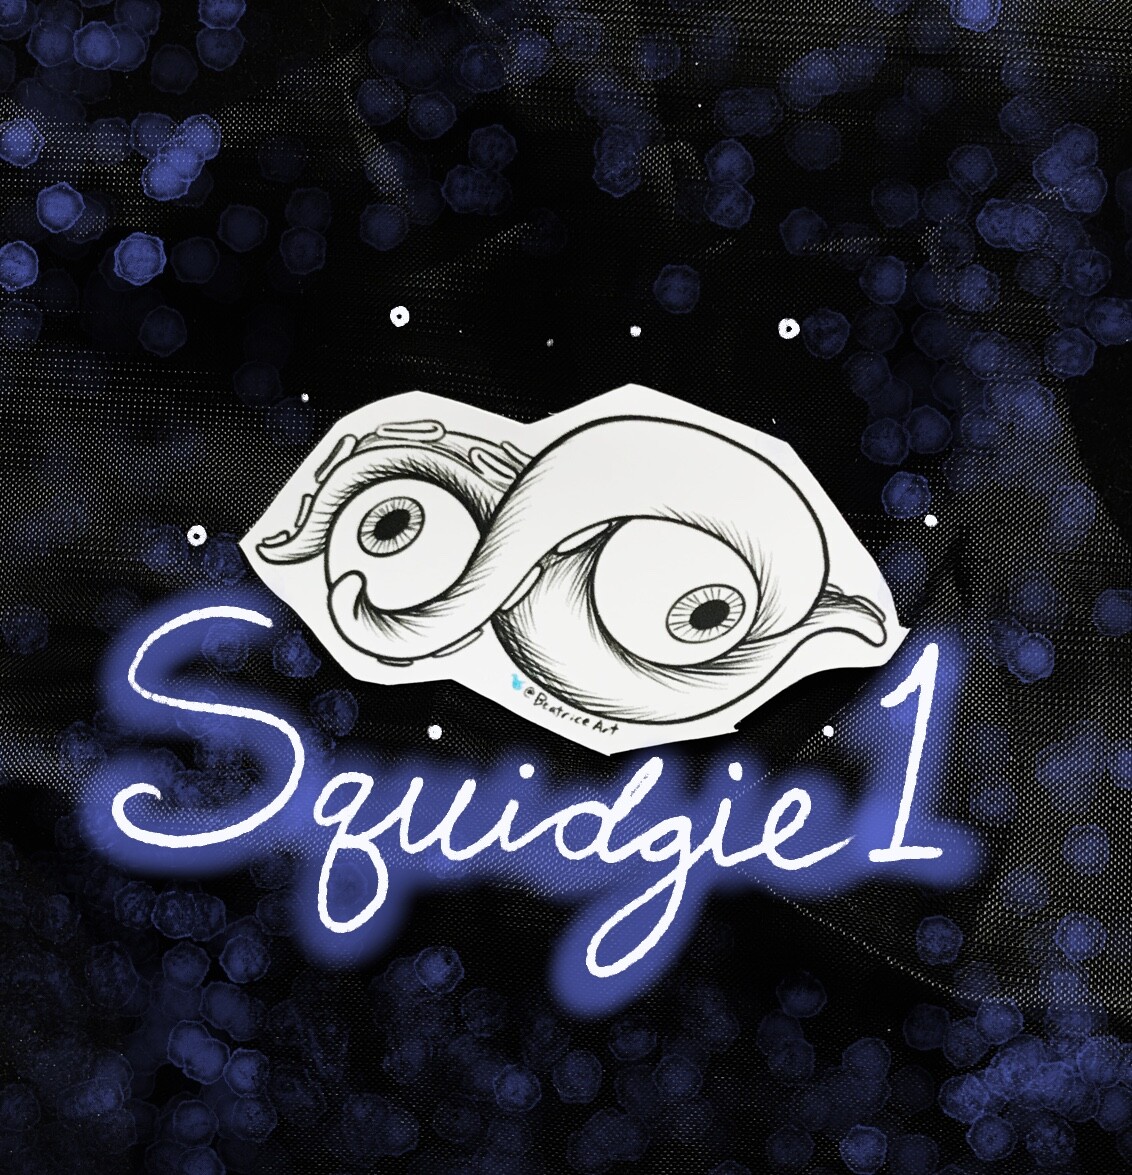 Squidgie 1, featuring 2 eyeballs